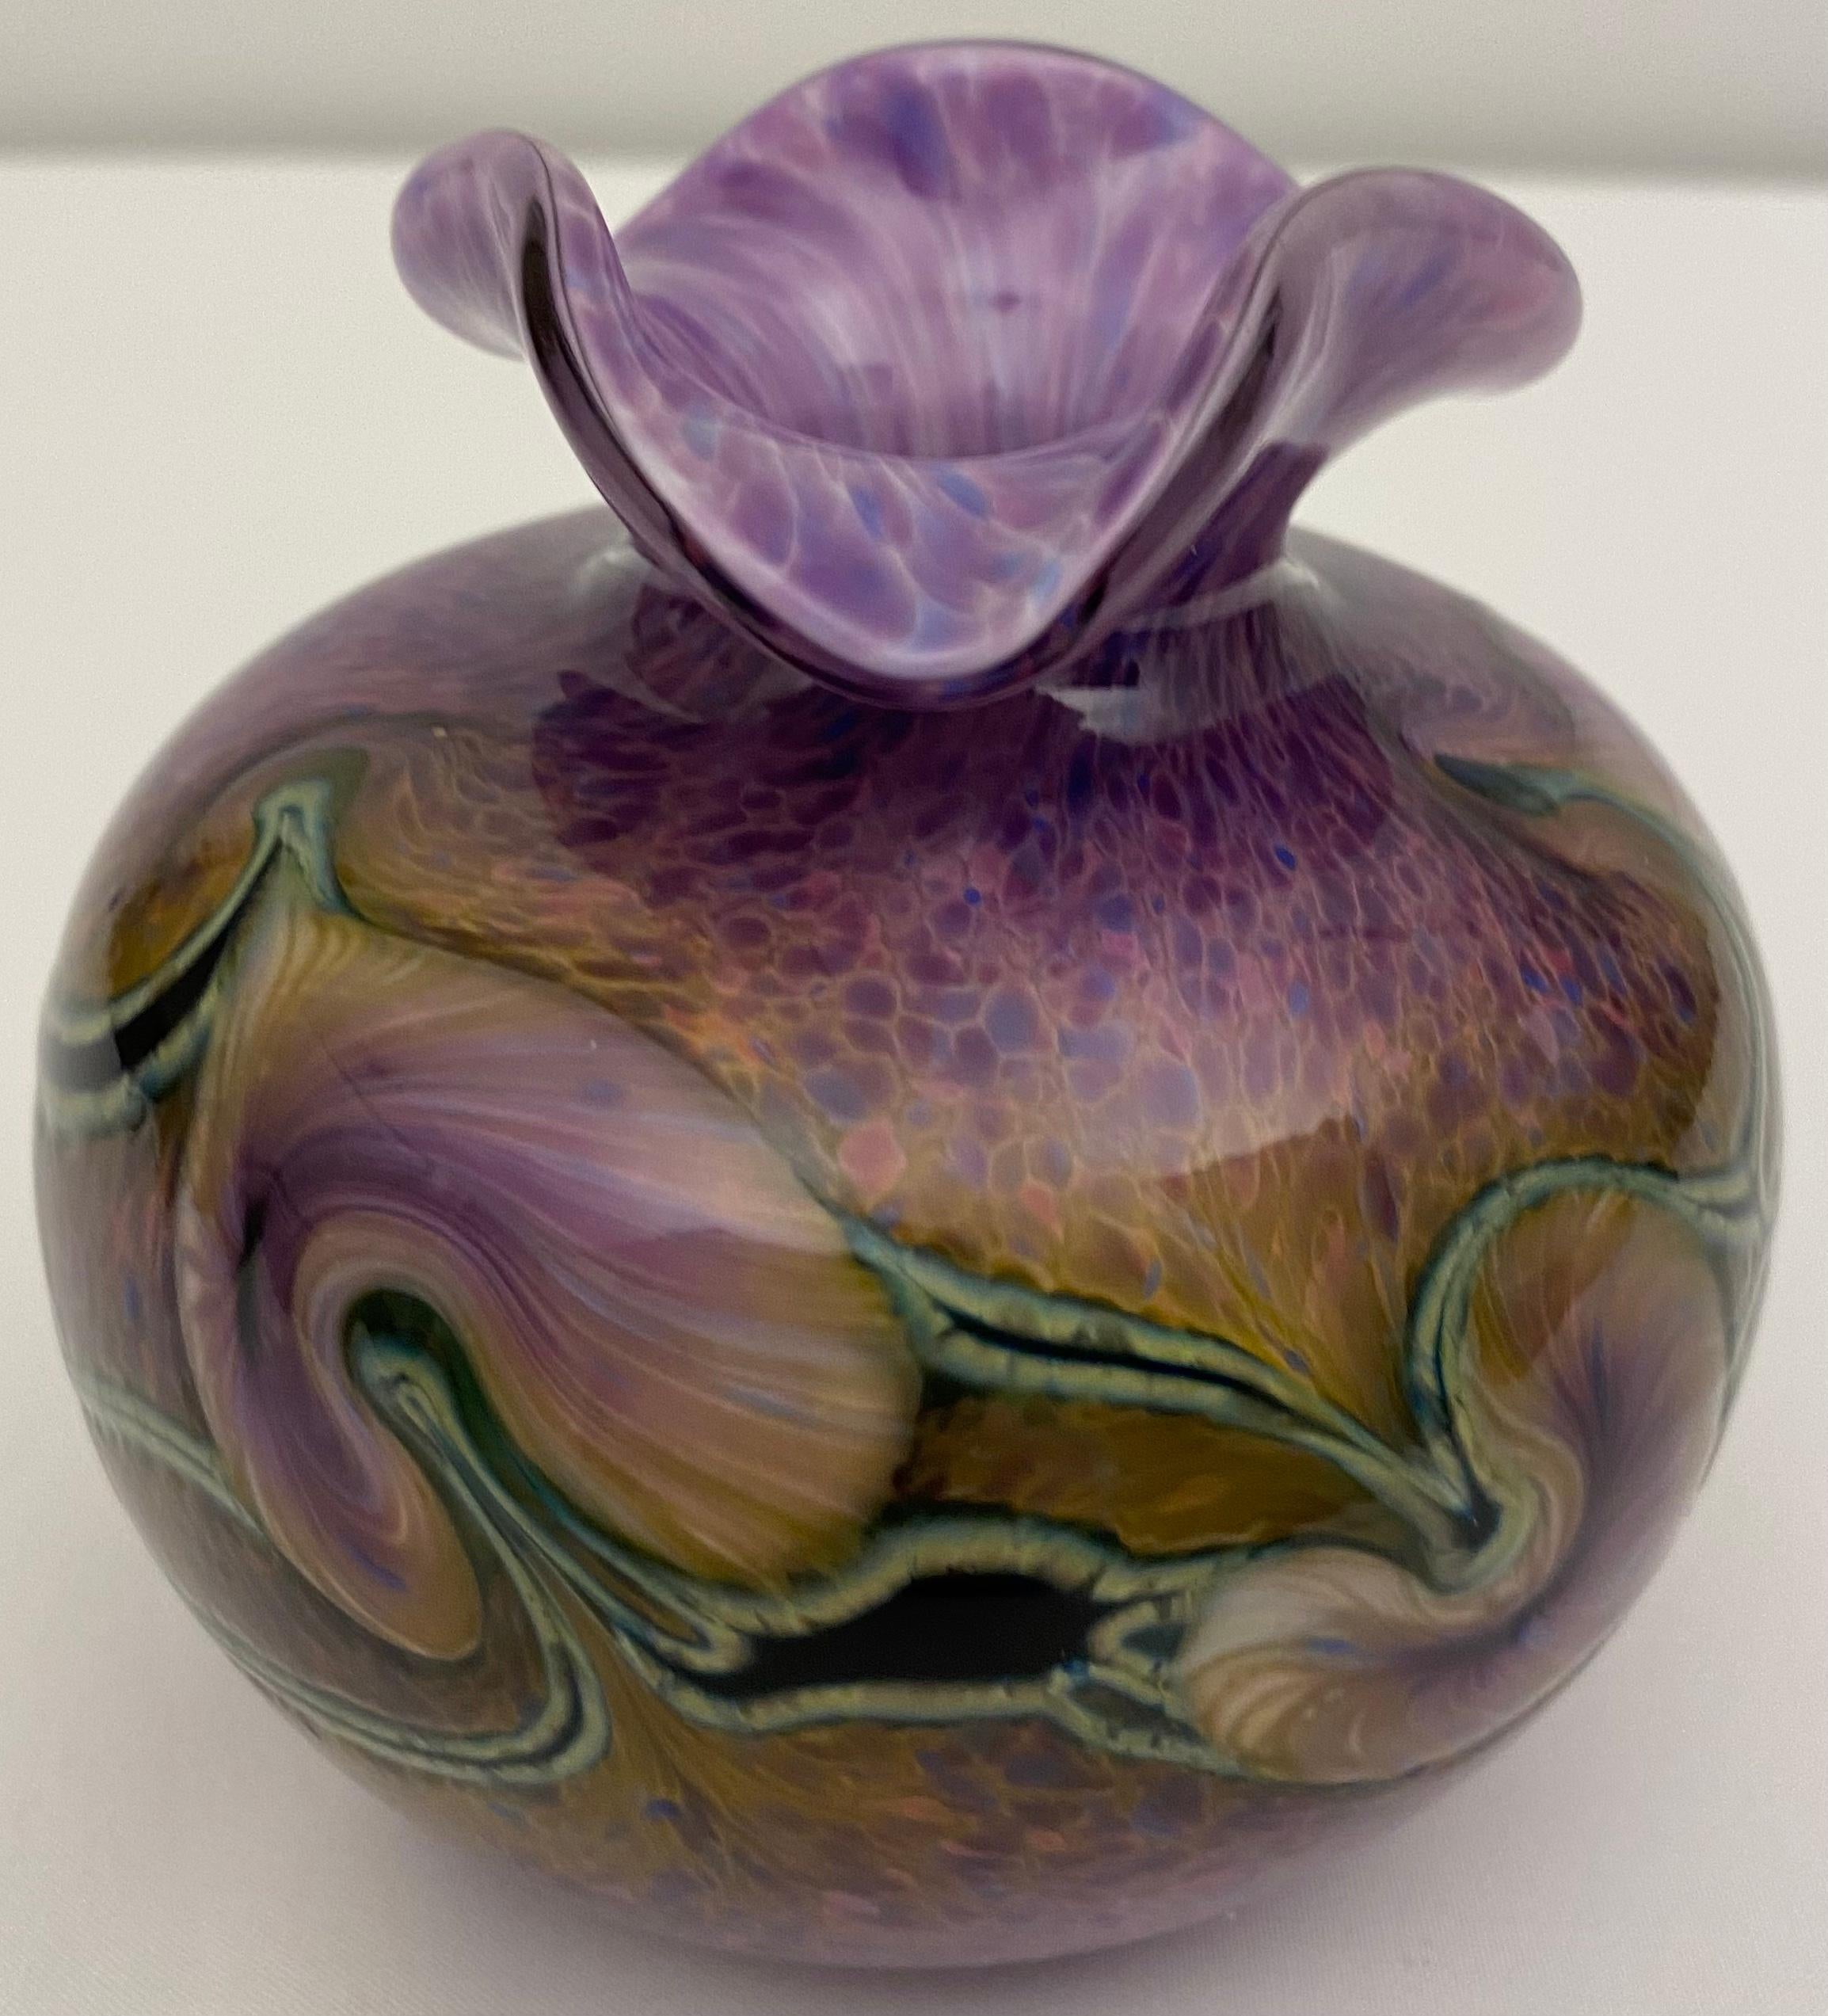 Magnifique vase rond en verre d'art de Murano. En haut, les bords sont festonnés et dépassent vers l'extérieur de façon ondulée. La base est blanche avec de petites nuances de violet, de bleu et de rose. Les couleurs vont des plus foncées à la base